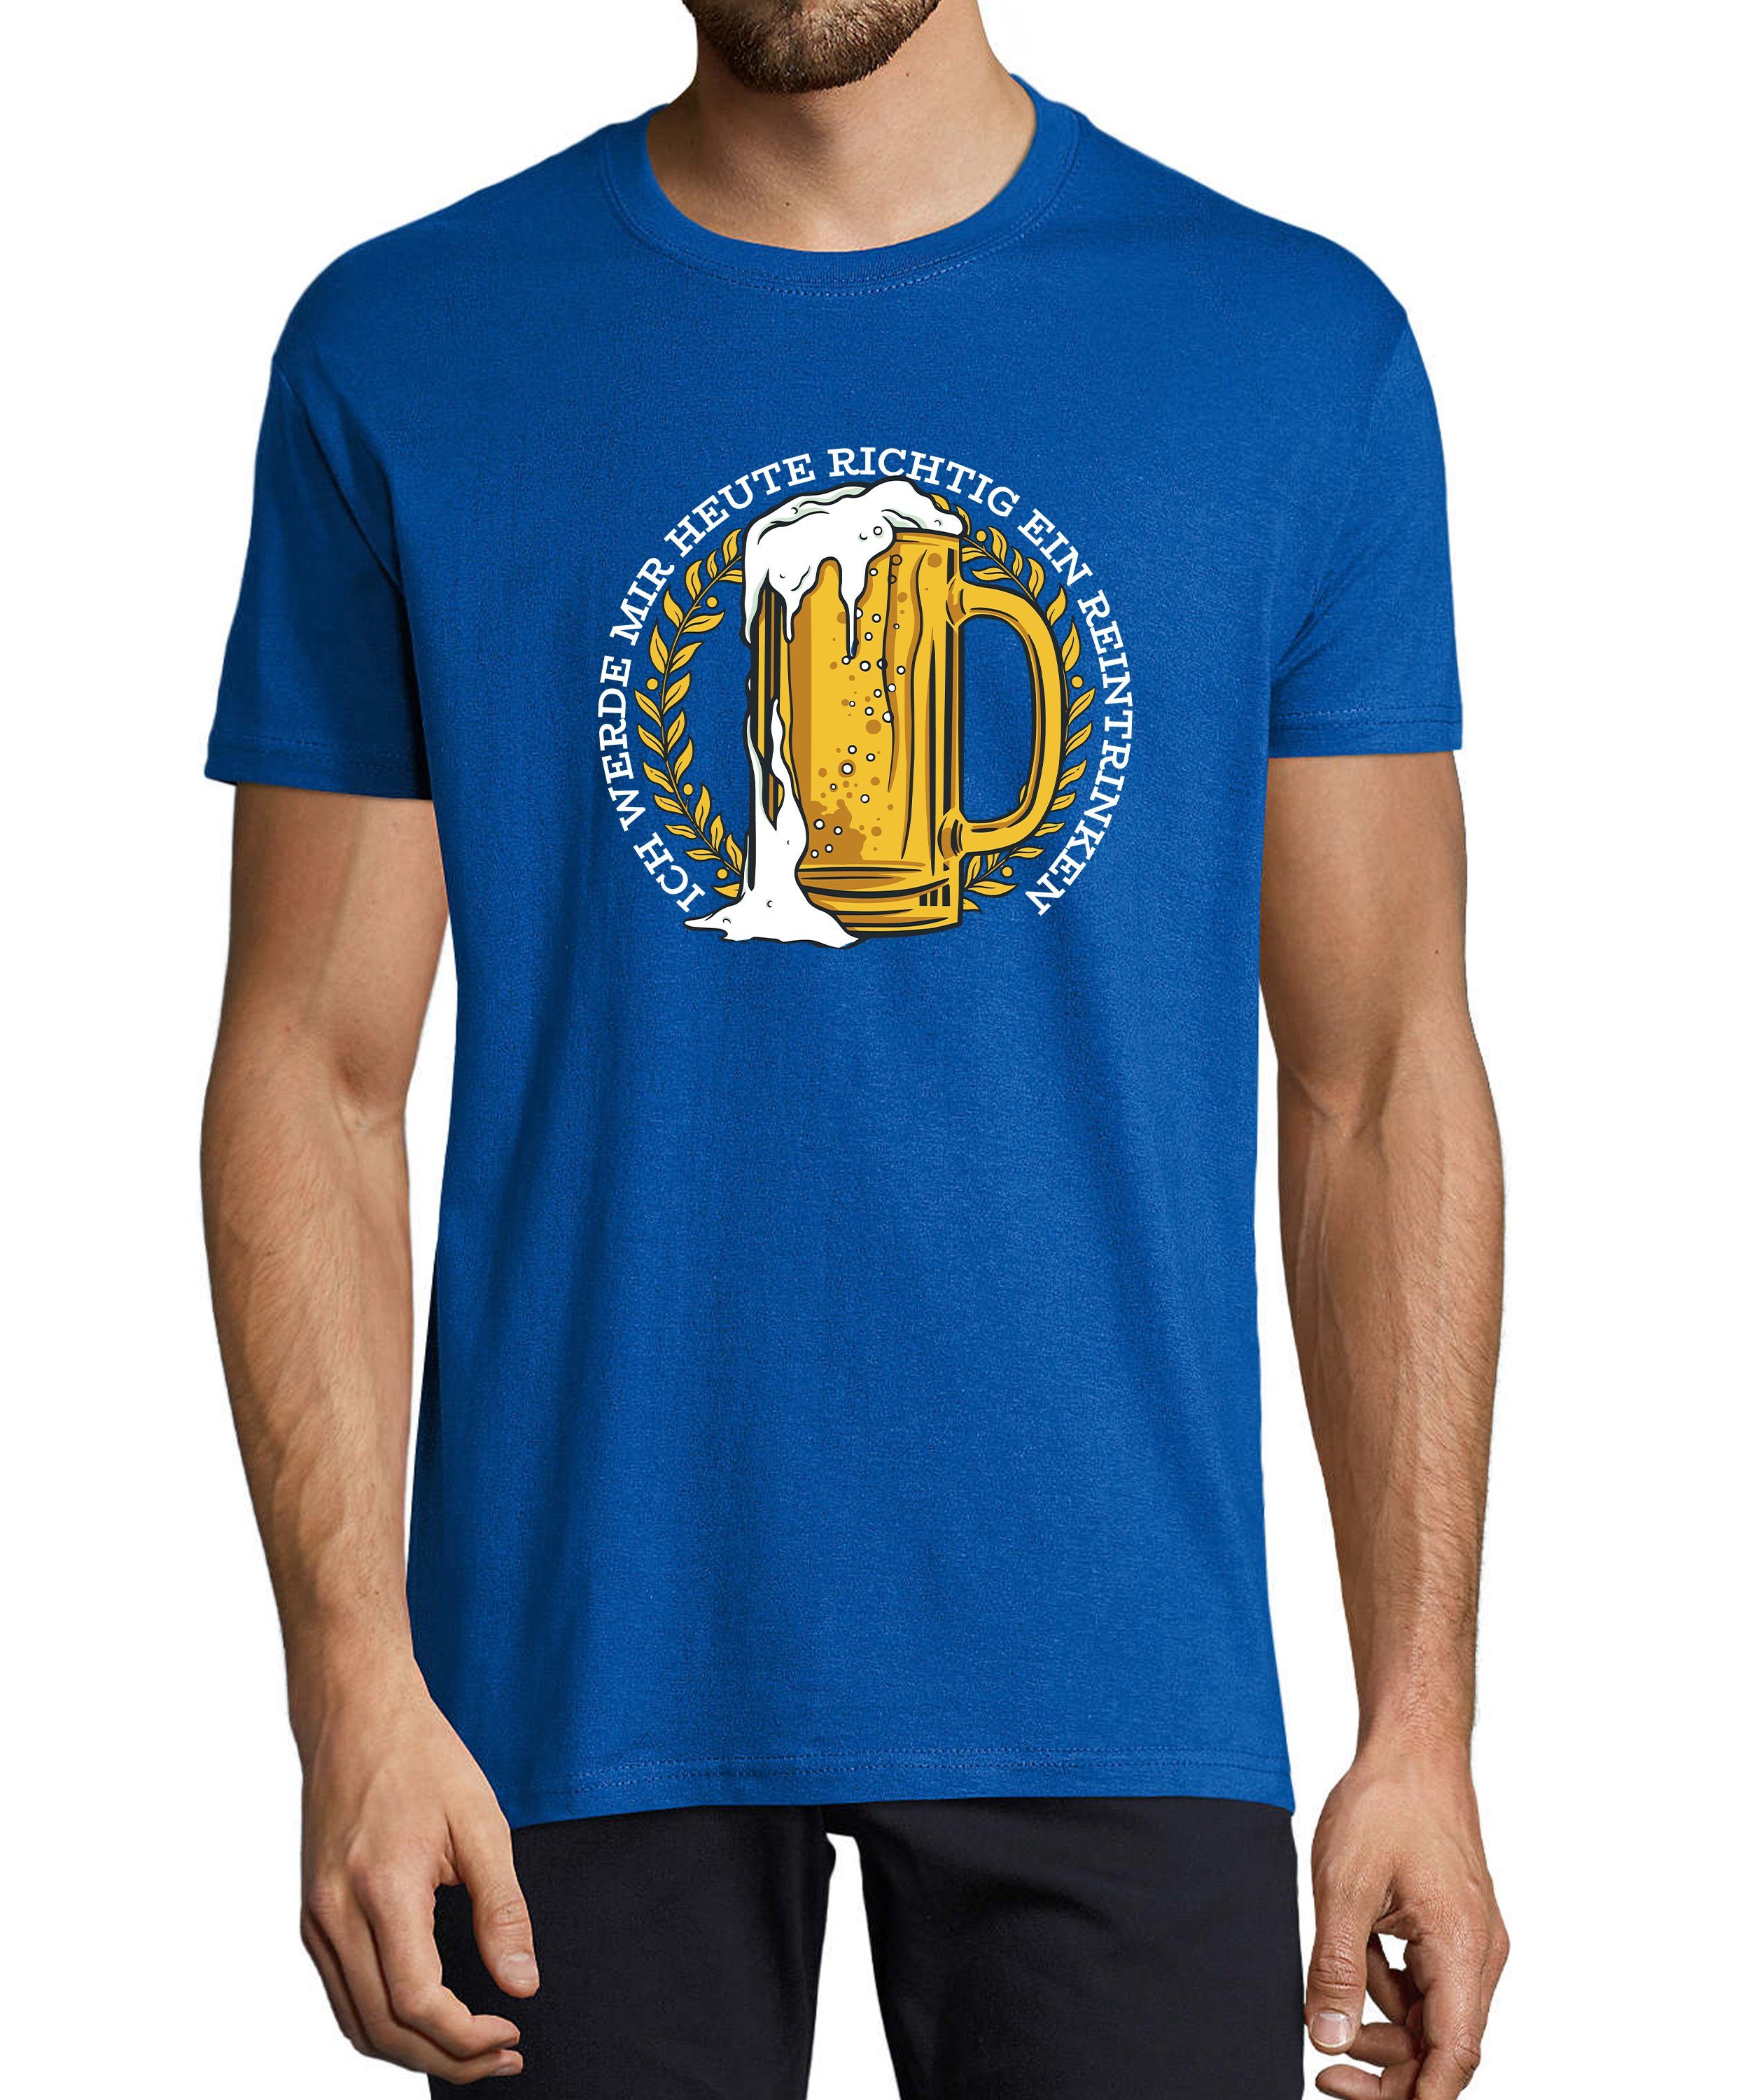 MyDesign24 T-Shirt Herren Fun Print mit Mass royal Oktoberfest - Regular Baumwollshirt i311 Shirt Aufdruck Fit, Trinkshirt Spruch Bier mit blau